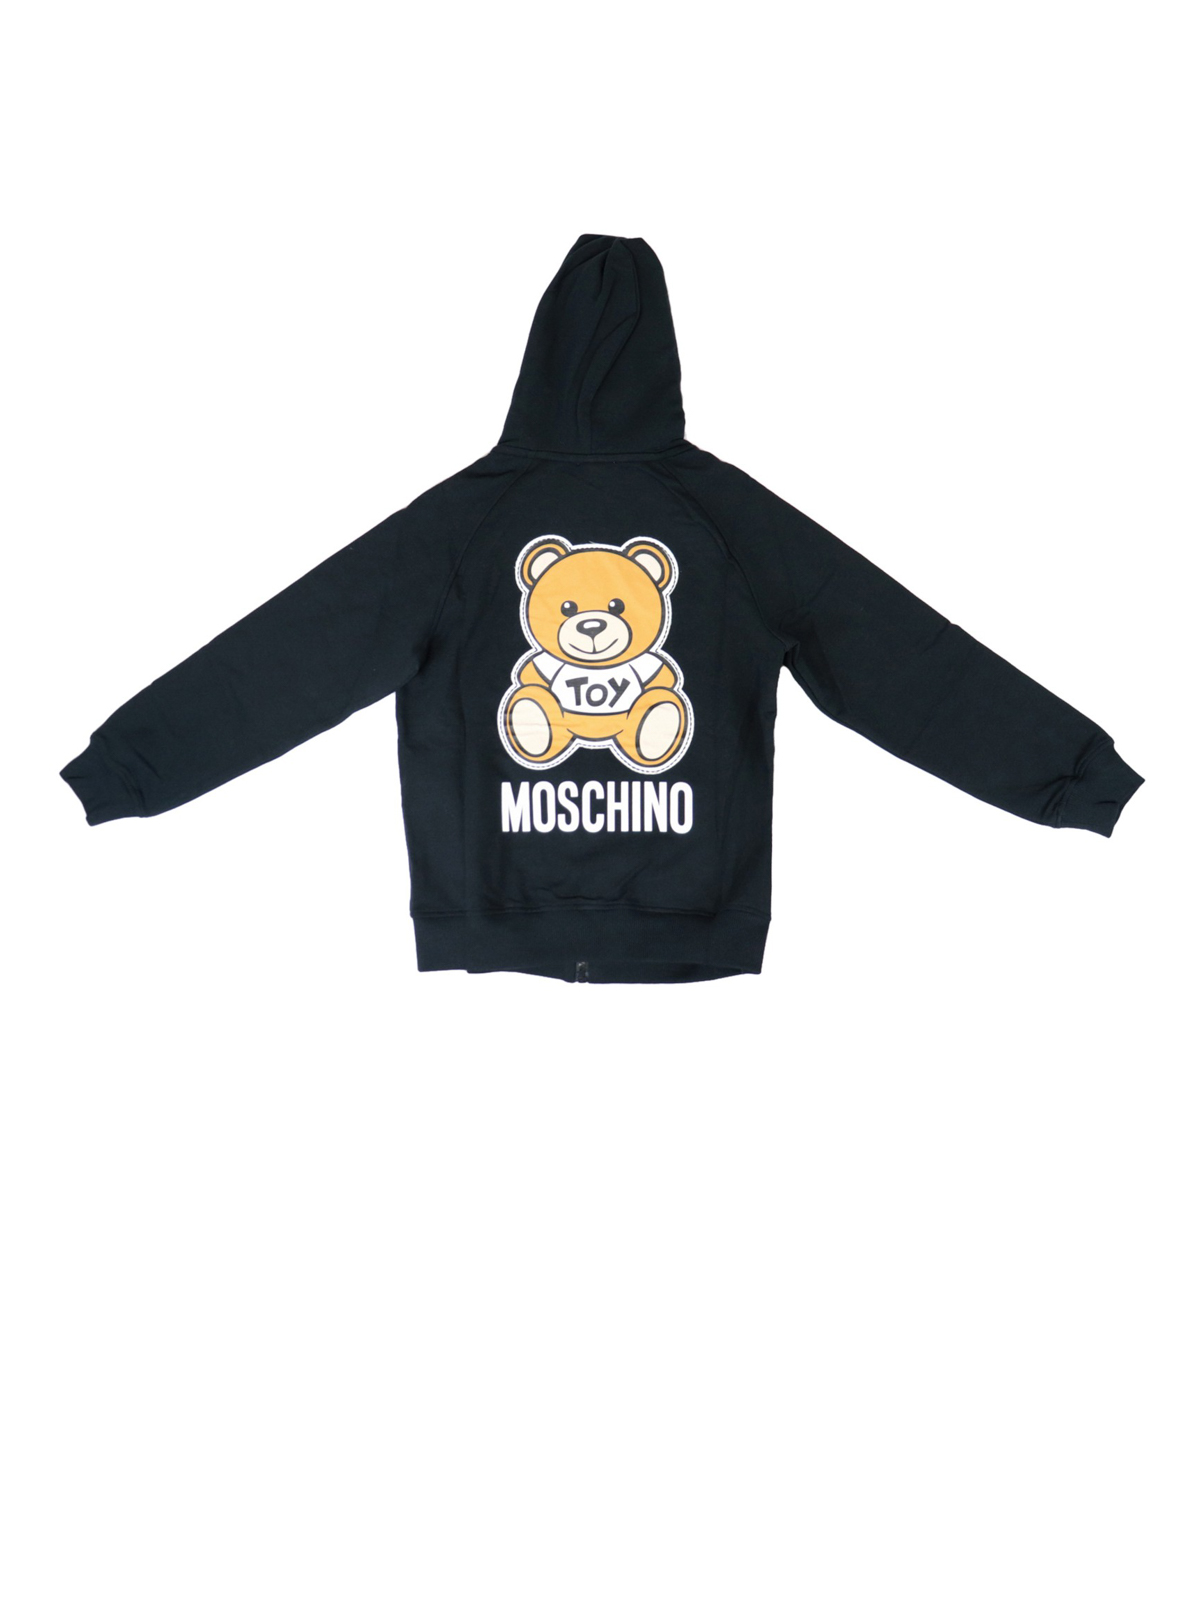 moschino hoodie kids